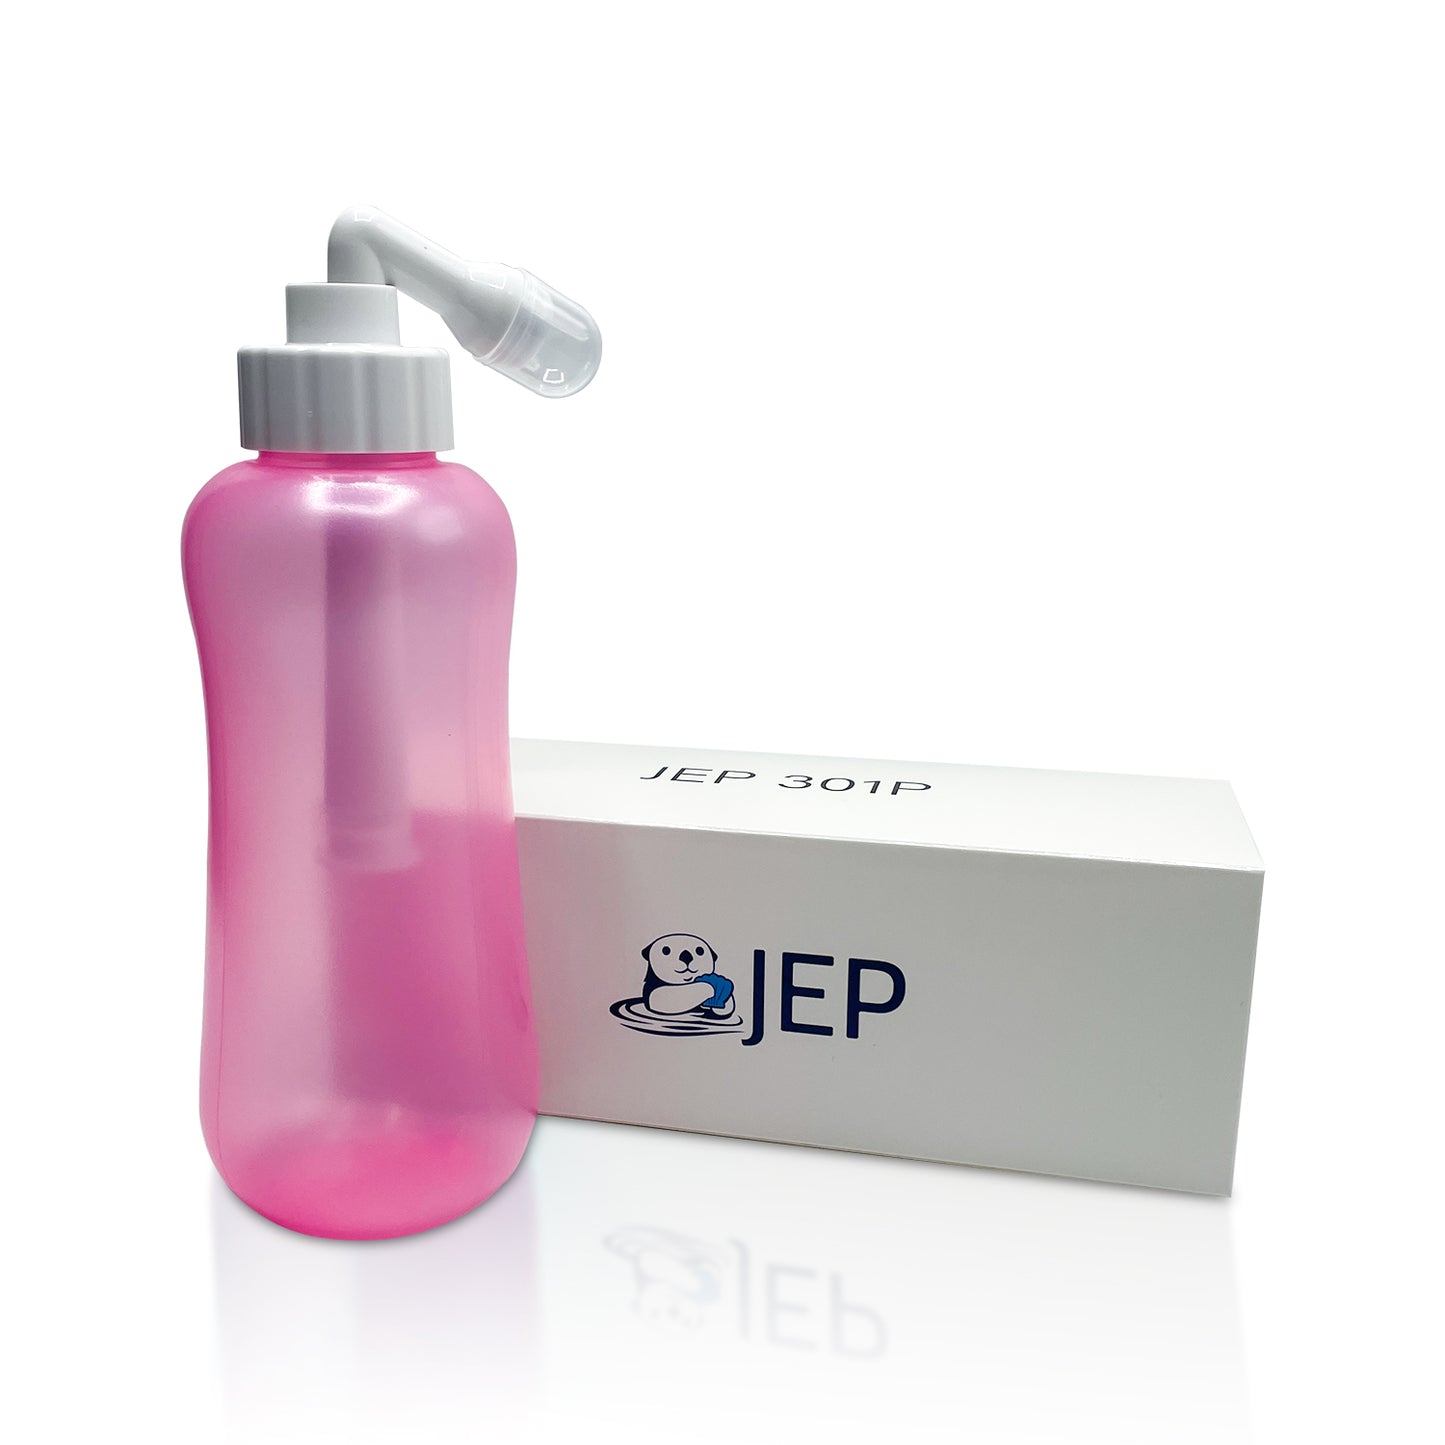 JEP 301 Premium Perry Bidet Bottle for Women & Men - Use on the Go